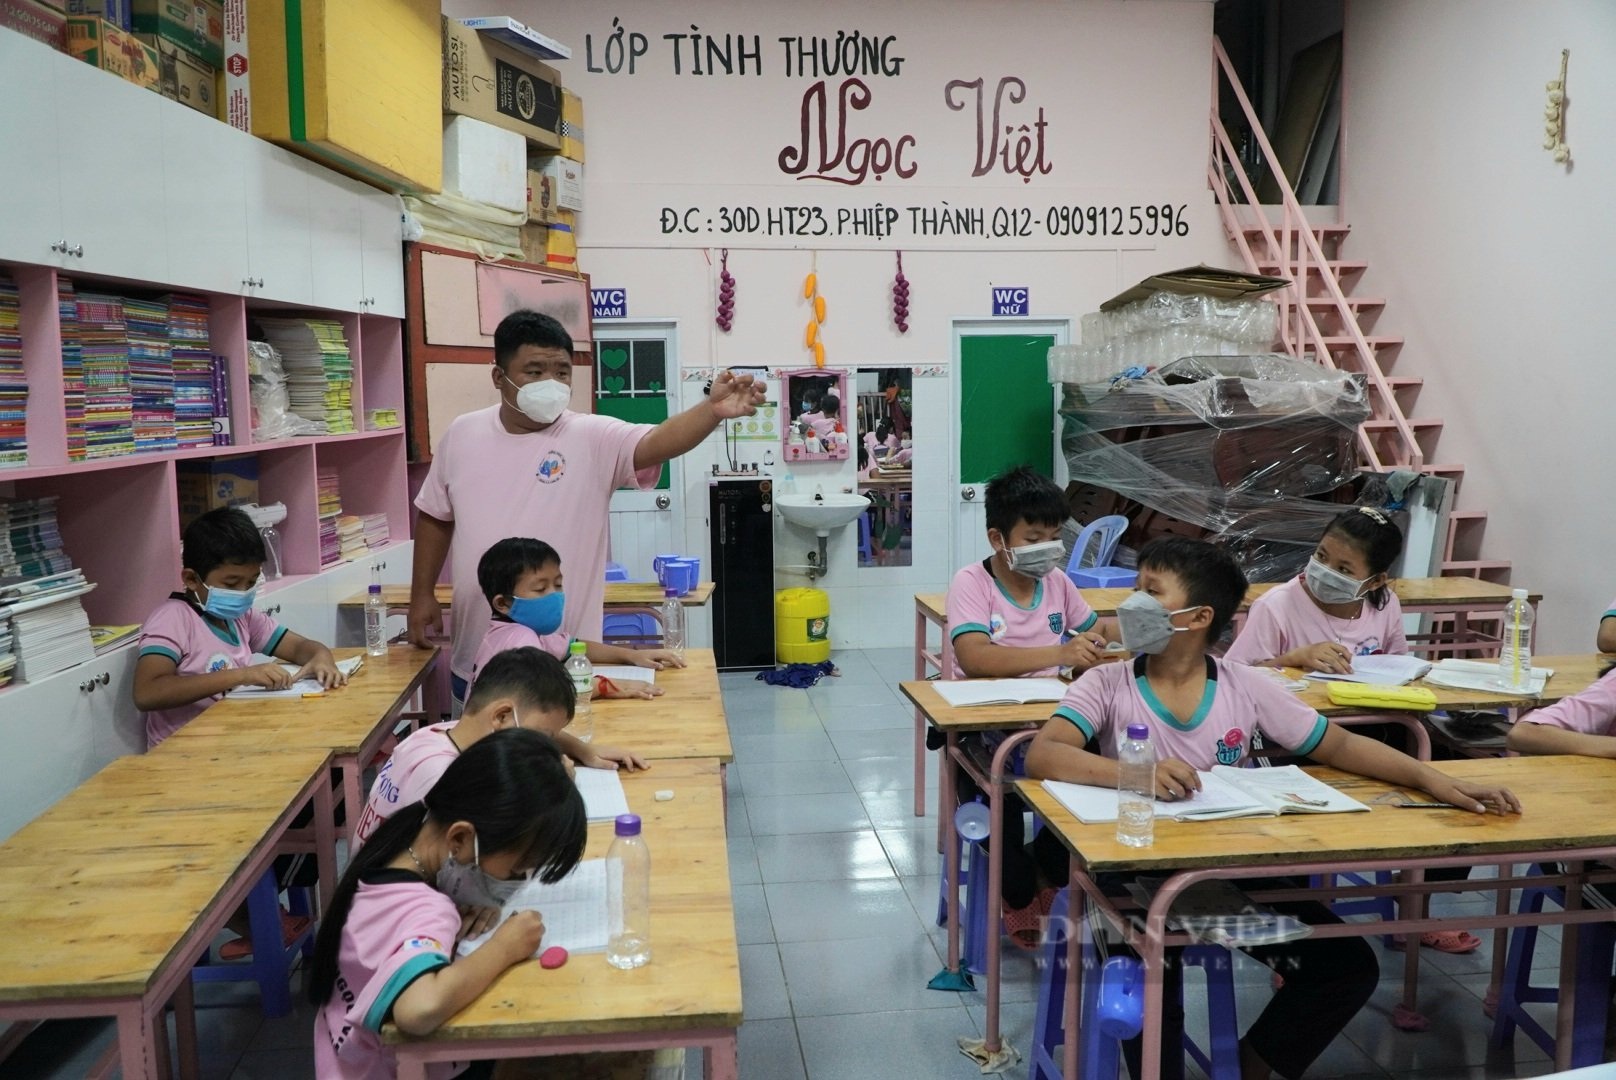 “Người thầy” gần 14 năm gieo chữ miễn phí cho những học sinh nghèo  - Ảnh 1.